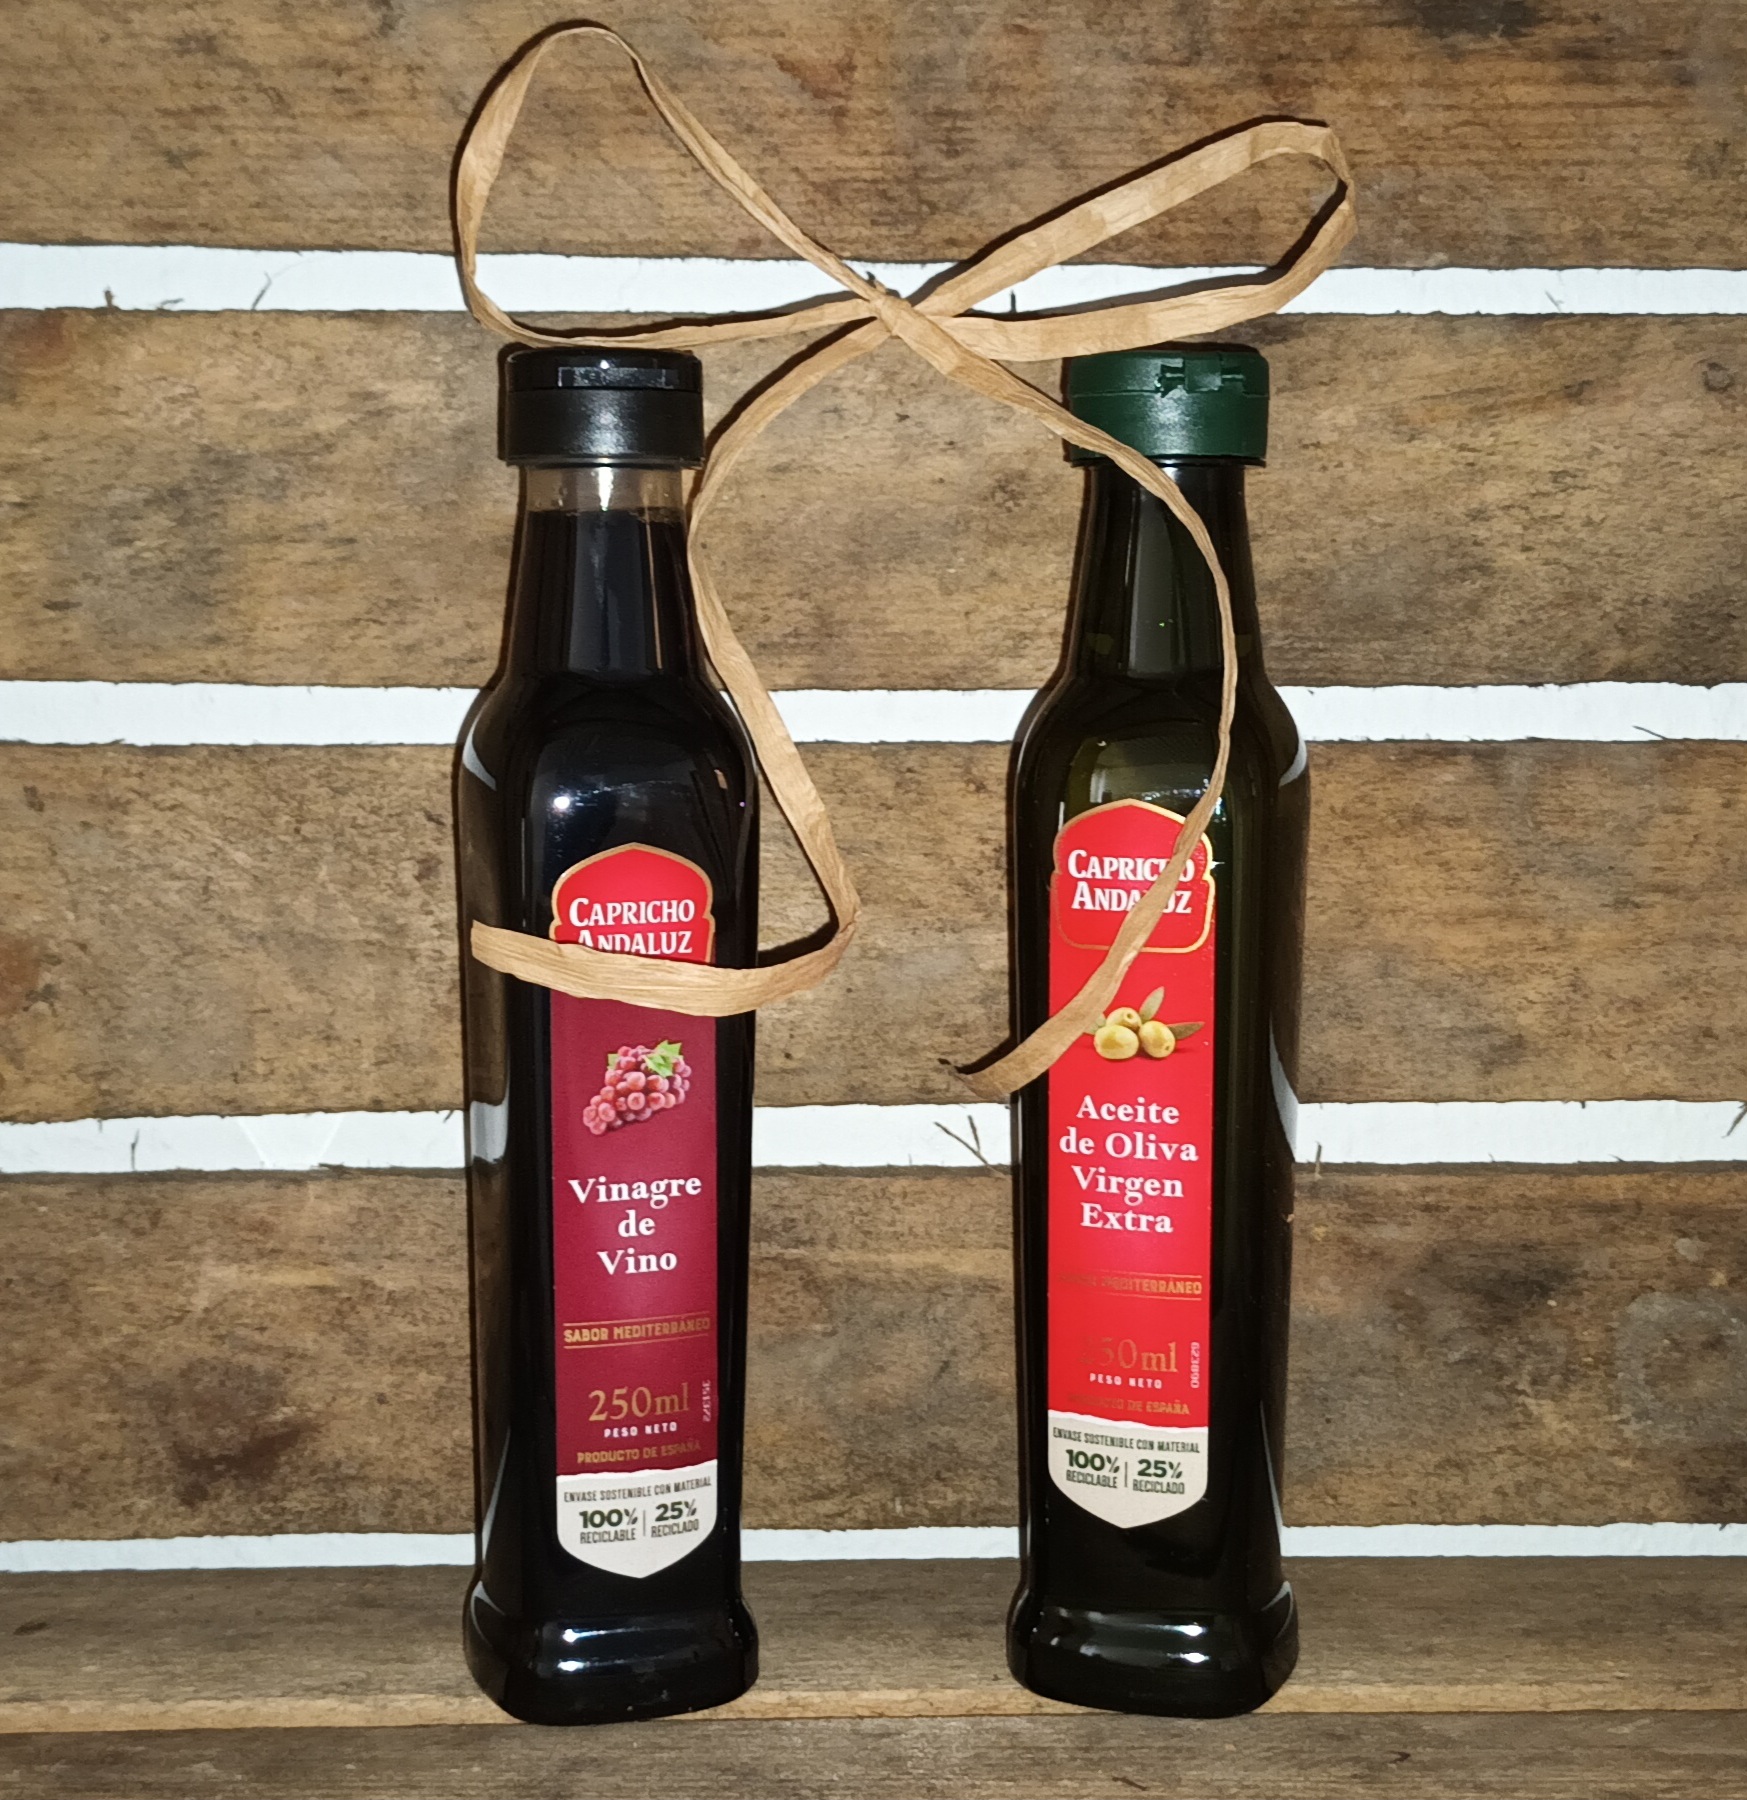 Set Essig und Olivenöl, original aus Spanien je 250 ml Kunststoffflaschen, Vinagre de Vino und Aceite de Olivia Virgen Extra, Geschenk Idee